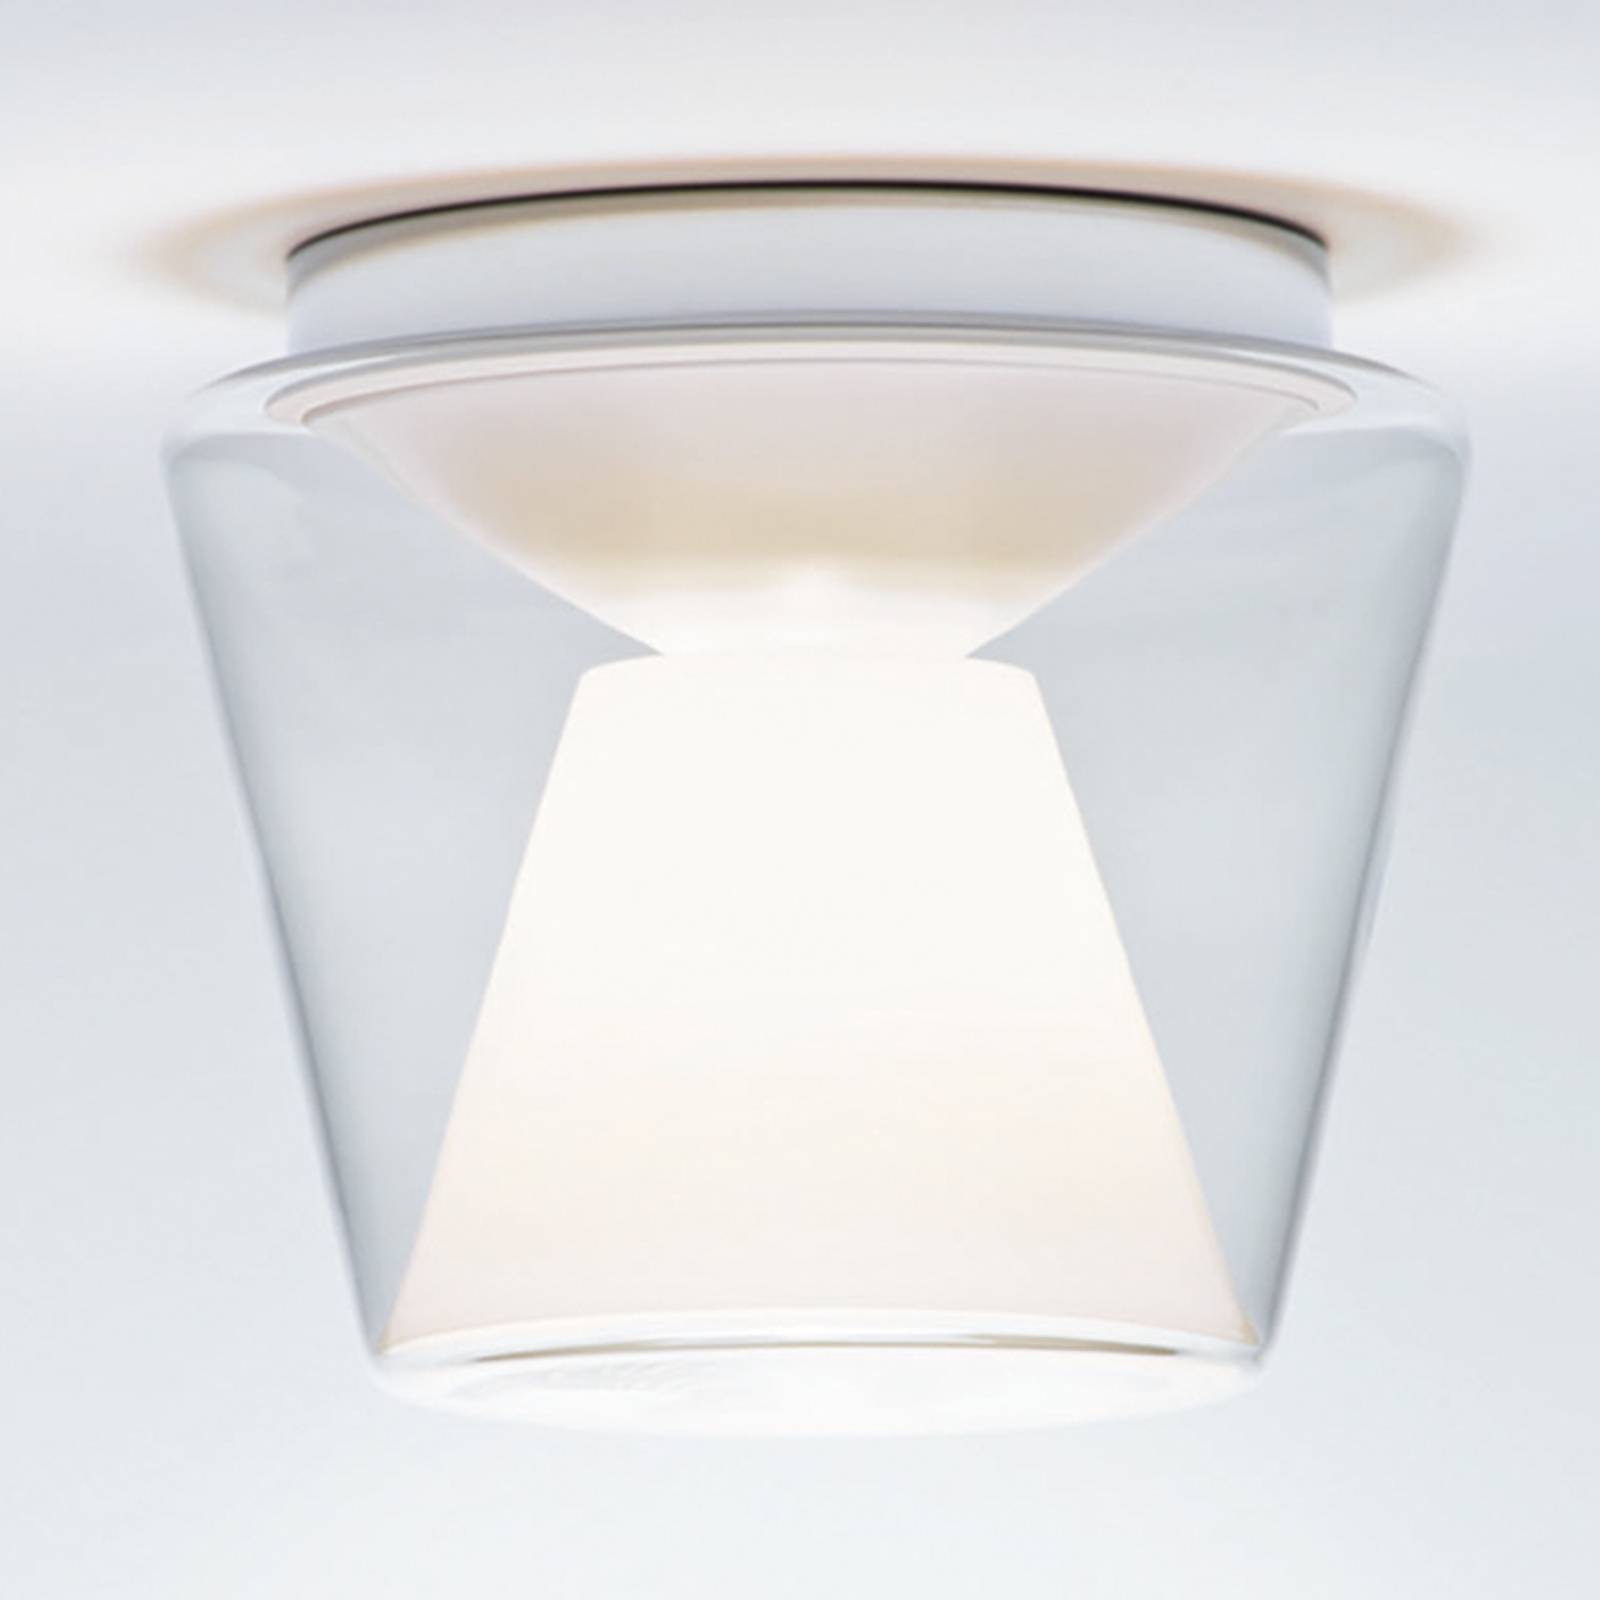 Image of Serien Lighting Plafonnier LED de designer en verre soufflé Annex 4260458631249